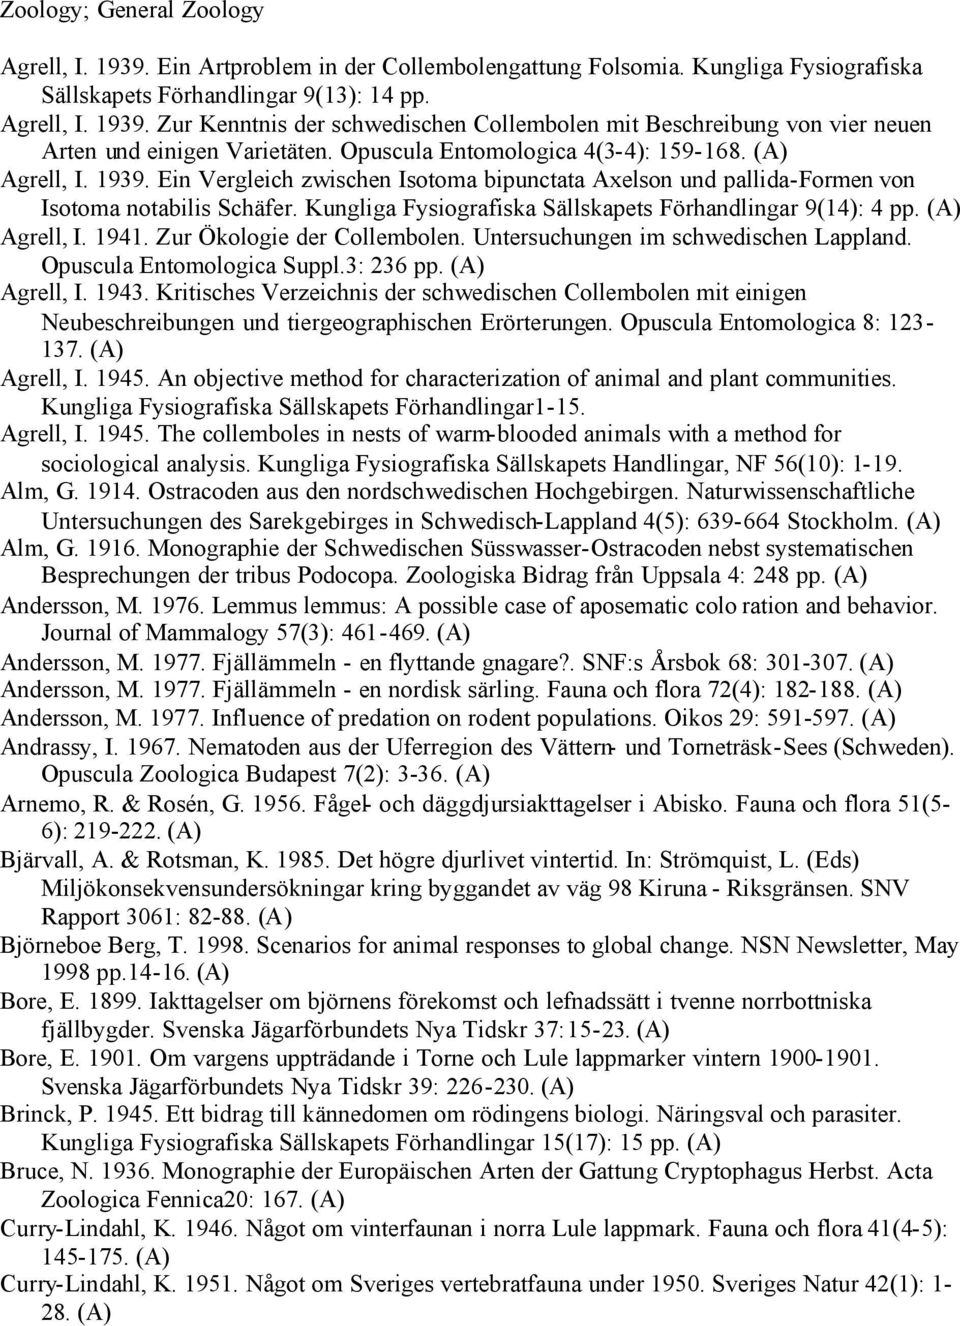 Kungliga Fysiografiska Sällskapets Förhandlingar 9(14): 4 pp. Agrell, I. 1941. Zur Ökologie der Collembolen. Untersuchungen im schwedischen Lappland. Opuscula Entomologica Suppl.3: 236 pp. Agrell, I. 1943.